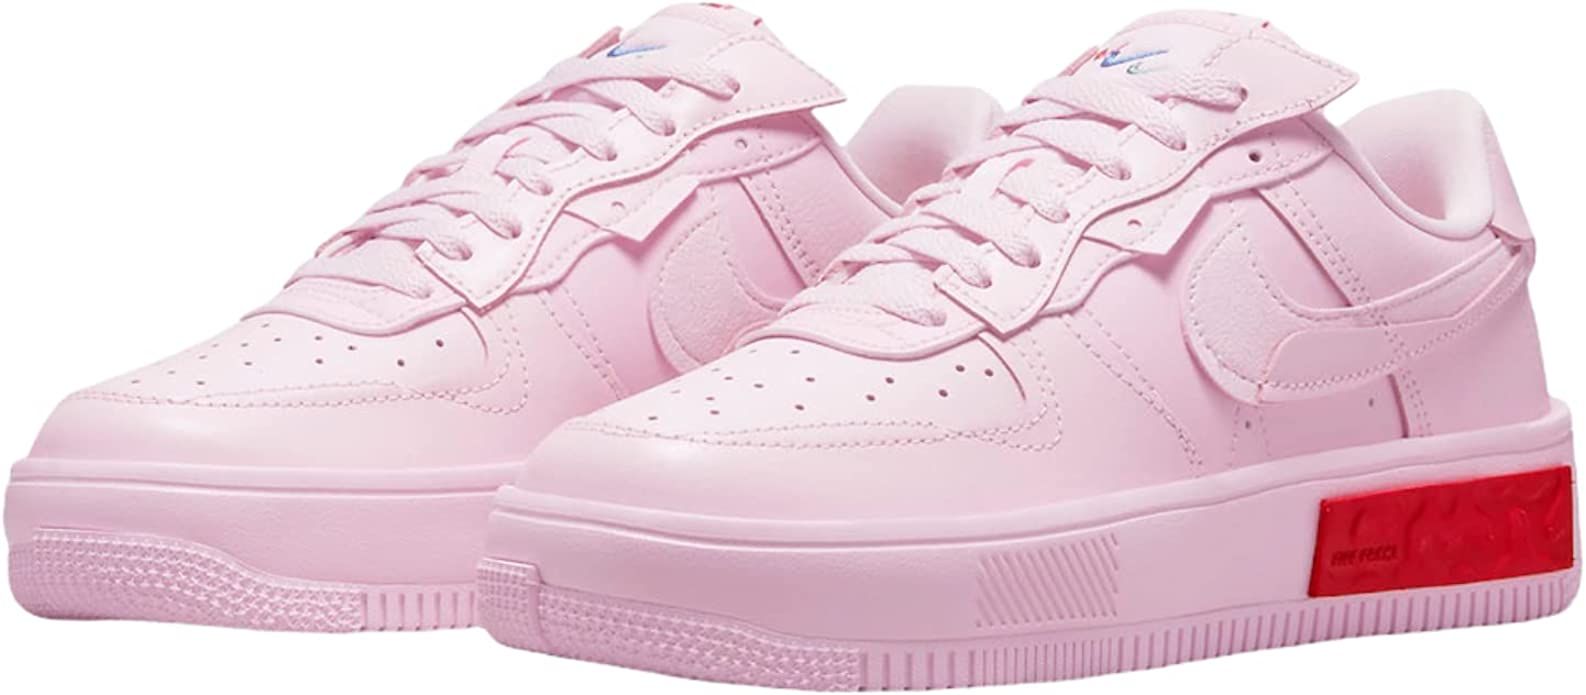 Nike Air Force 1 Fontanka Pink Women Limited Edition DA7024-600 (DA7024-600, Numeric_7) | Amazon (US)